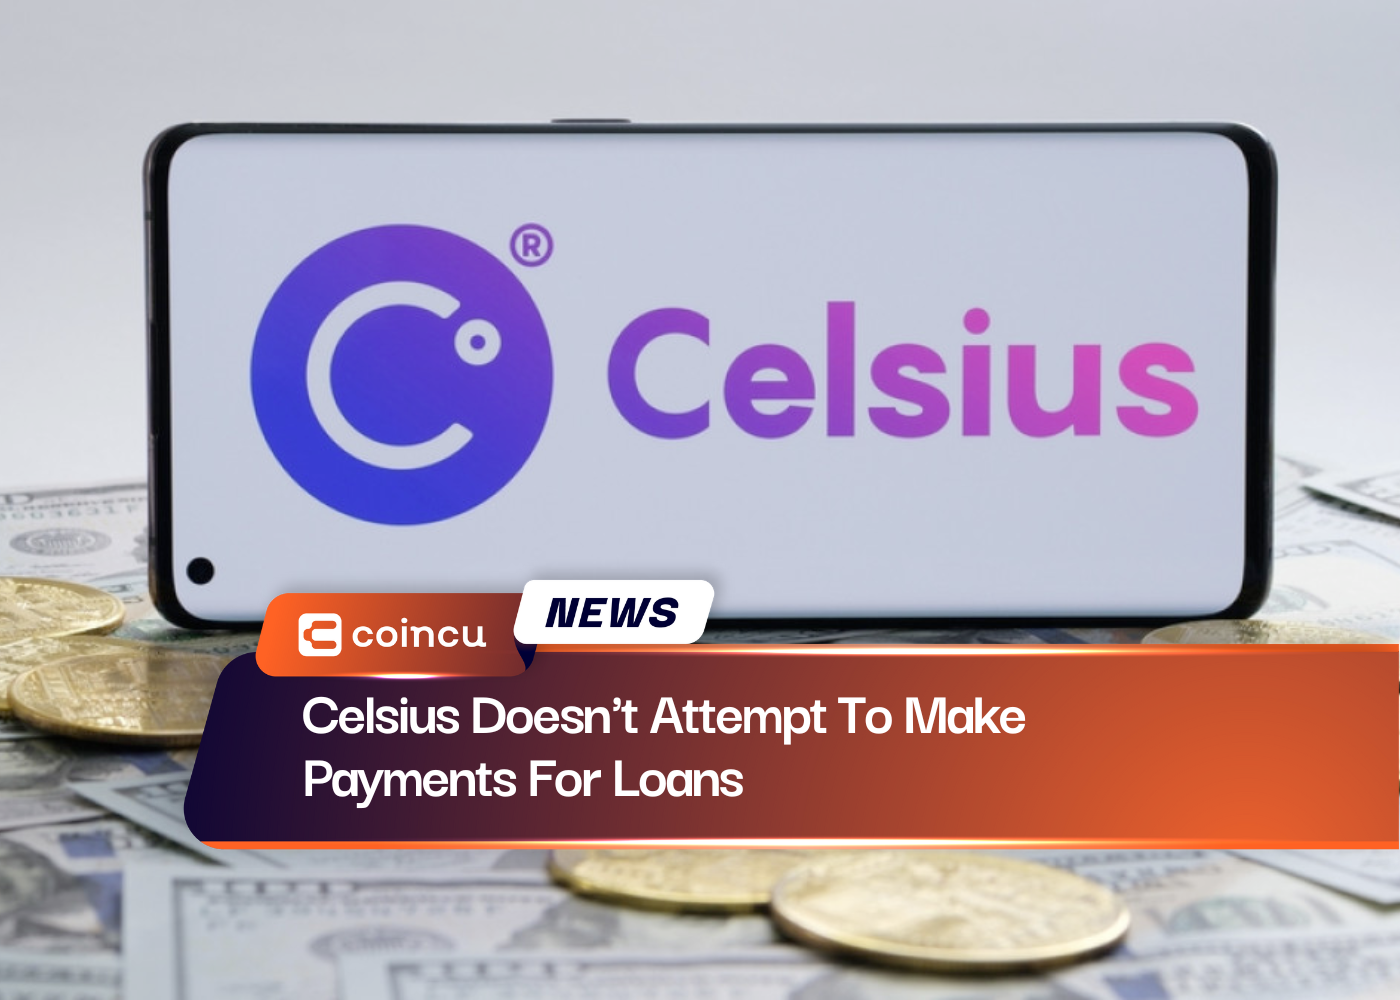 Celsius versucht nicht, Zahlungen für Kredite zu leisten